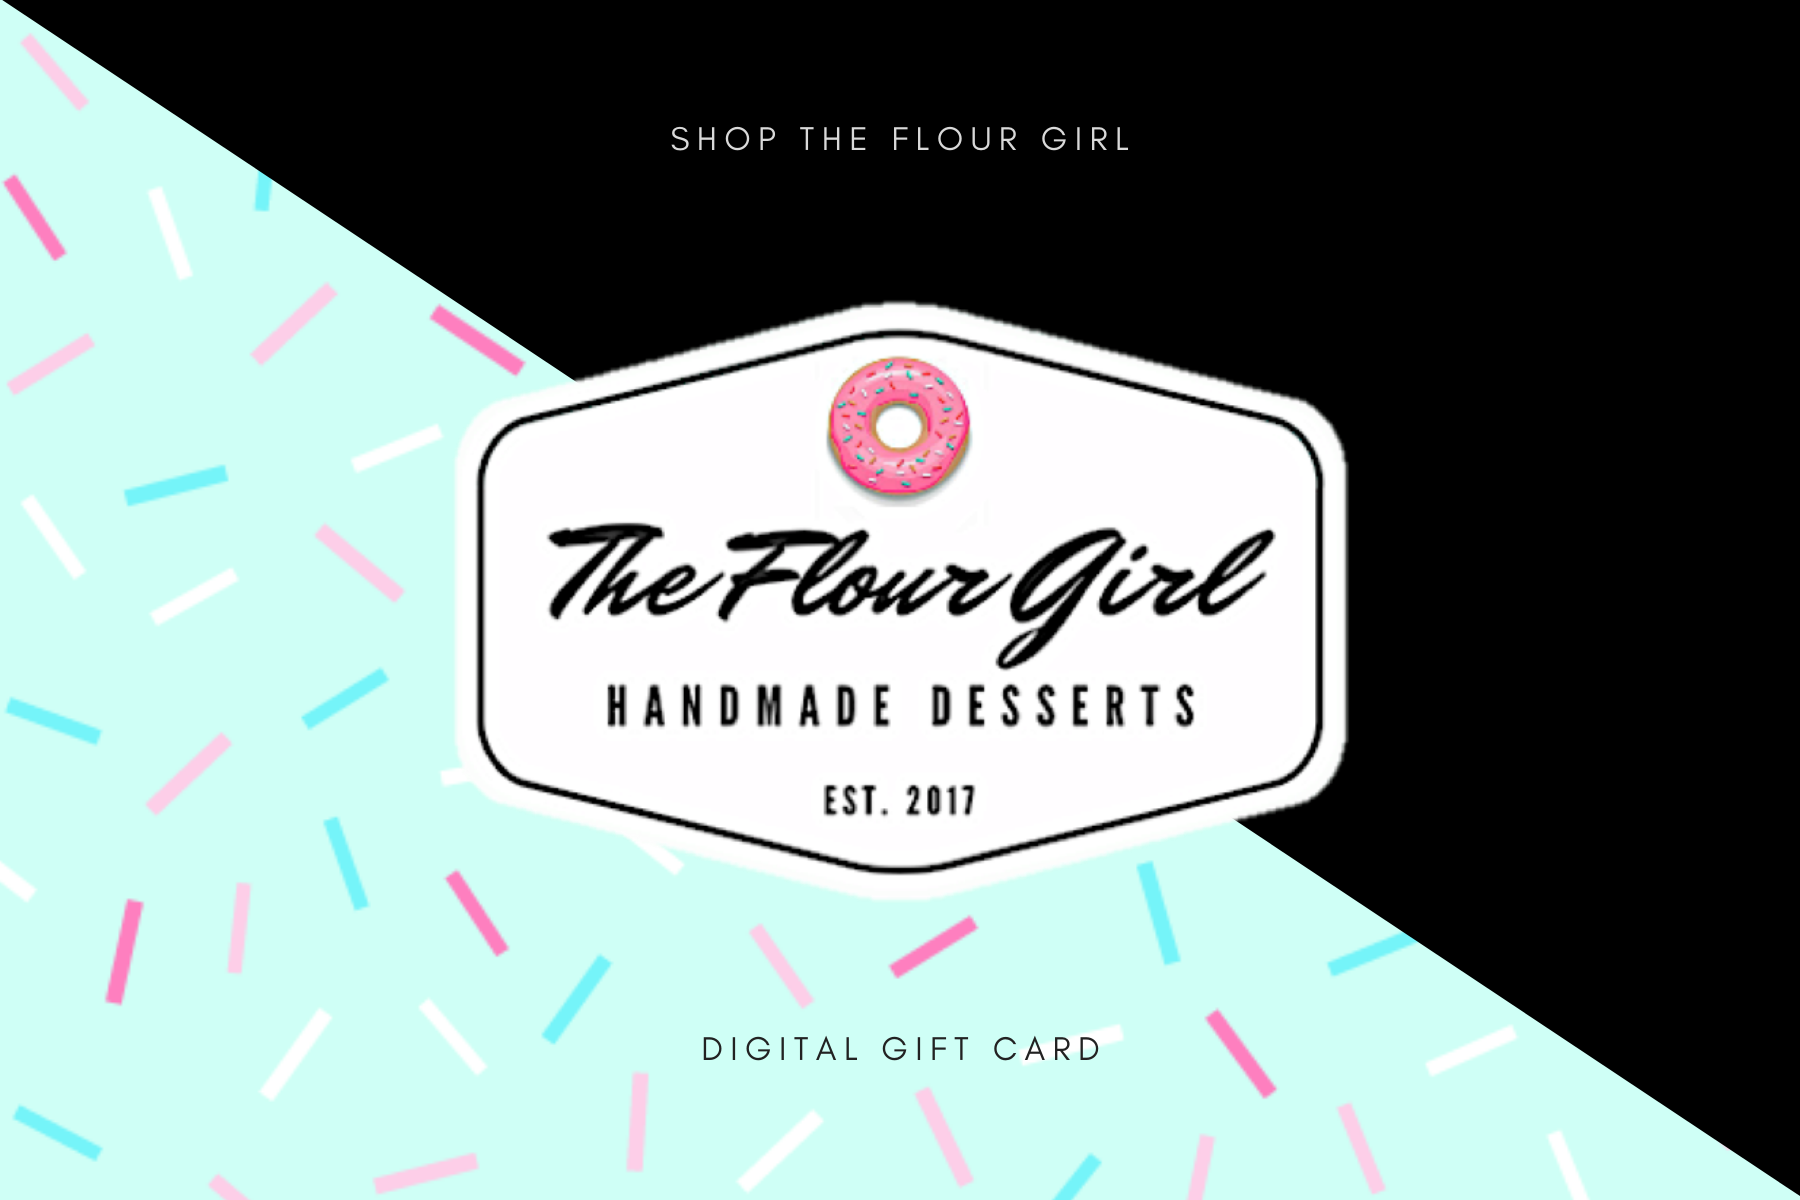 Digital Gift Cards, Bakery Desserts Delivered